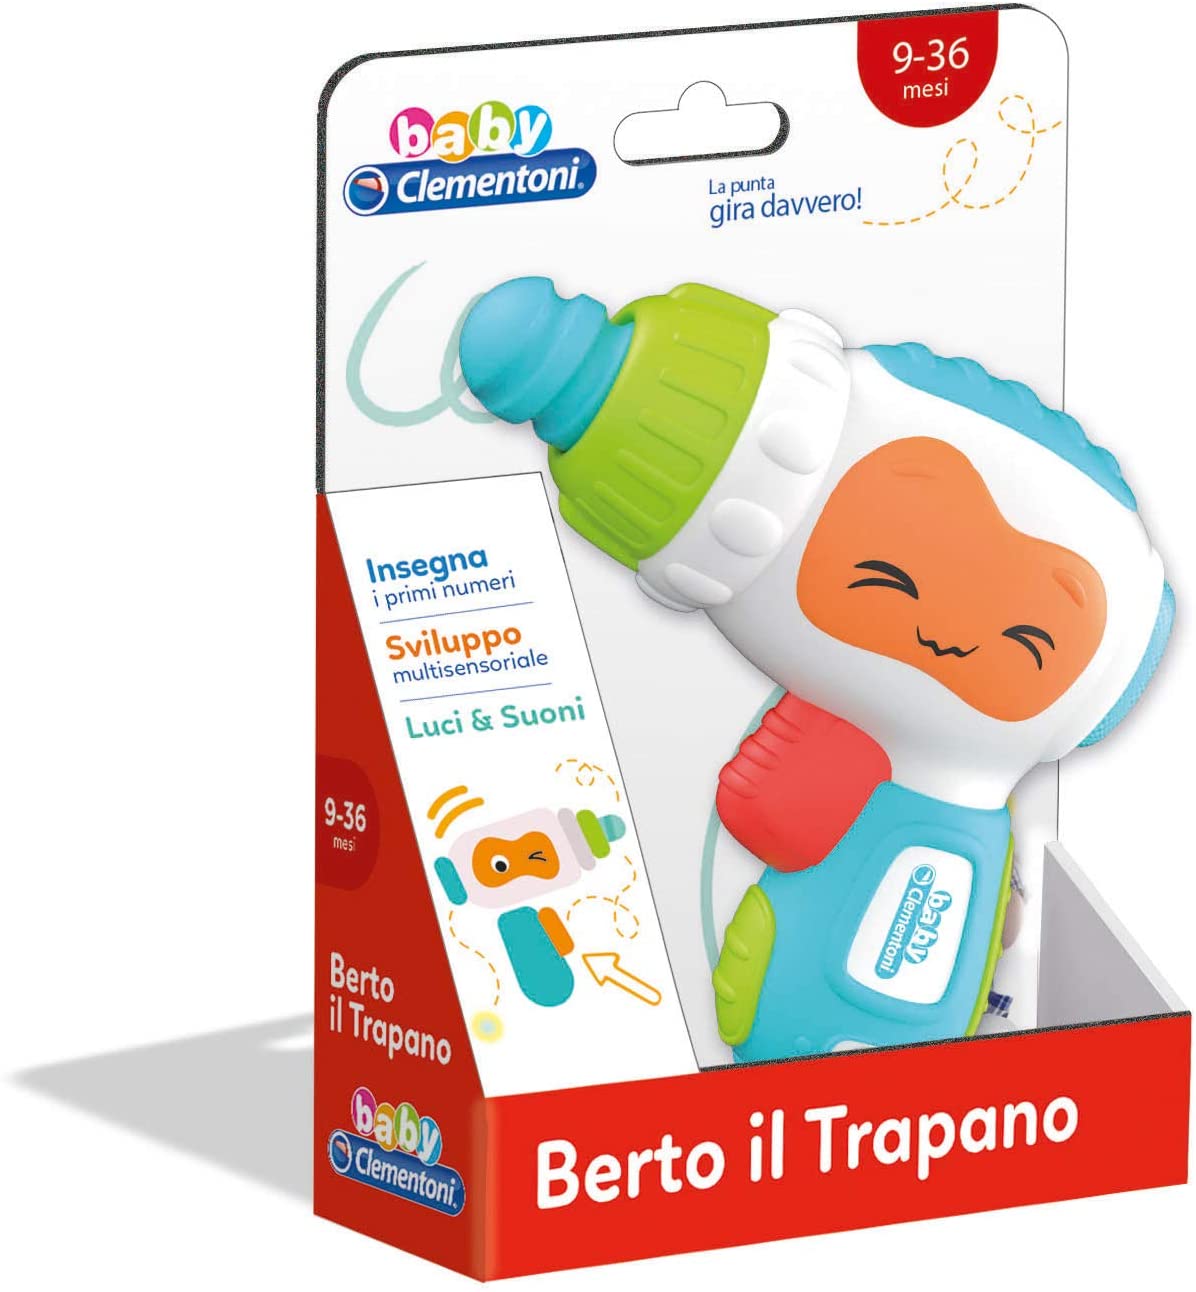 Baby Clementoni - Berto il Trapano - Italian Edition